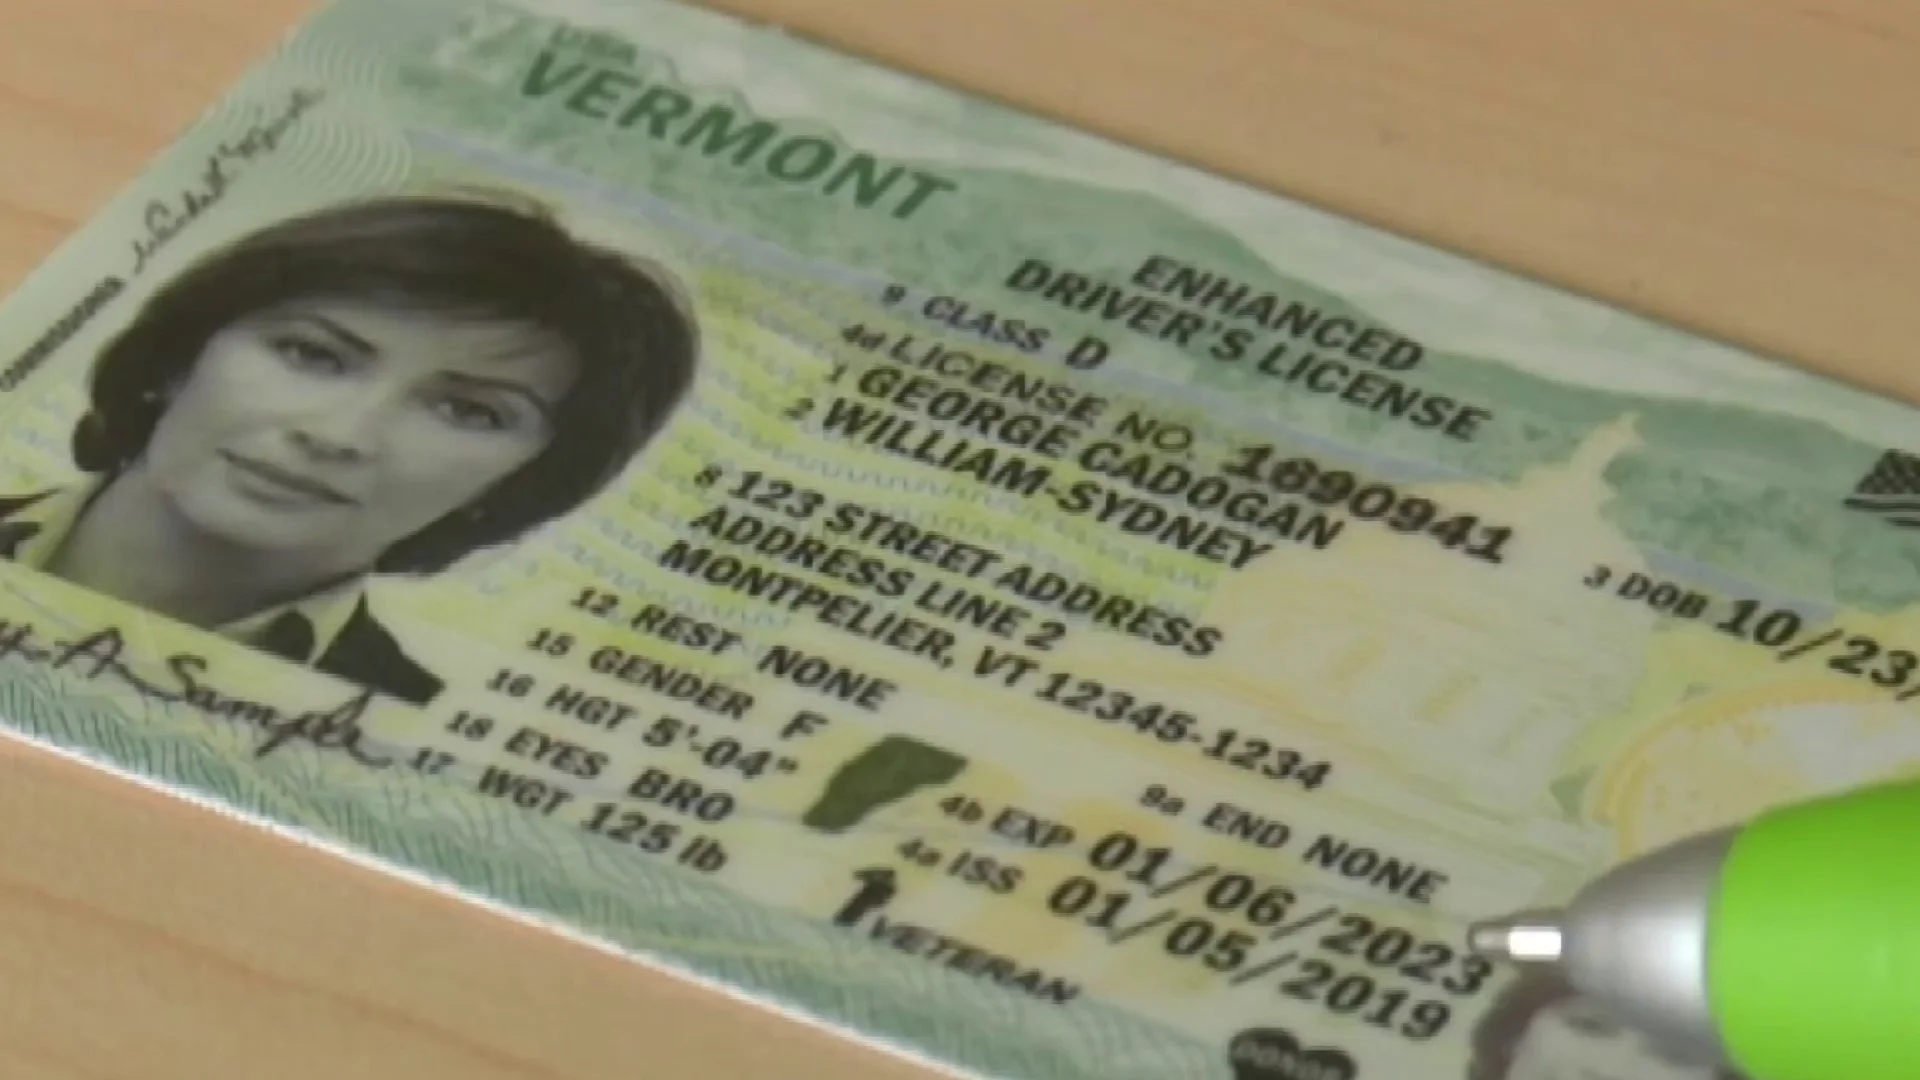 Cómo obtener el ID de Vermont